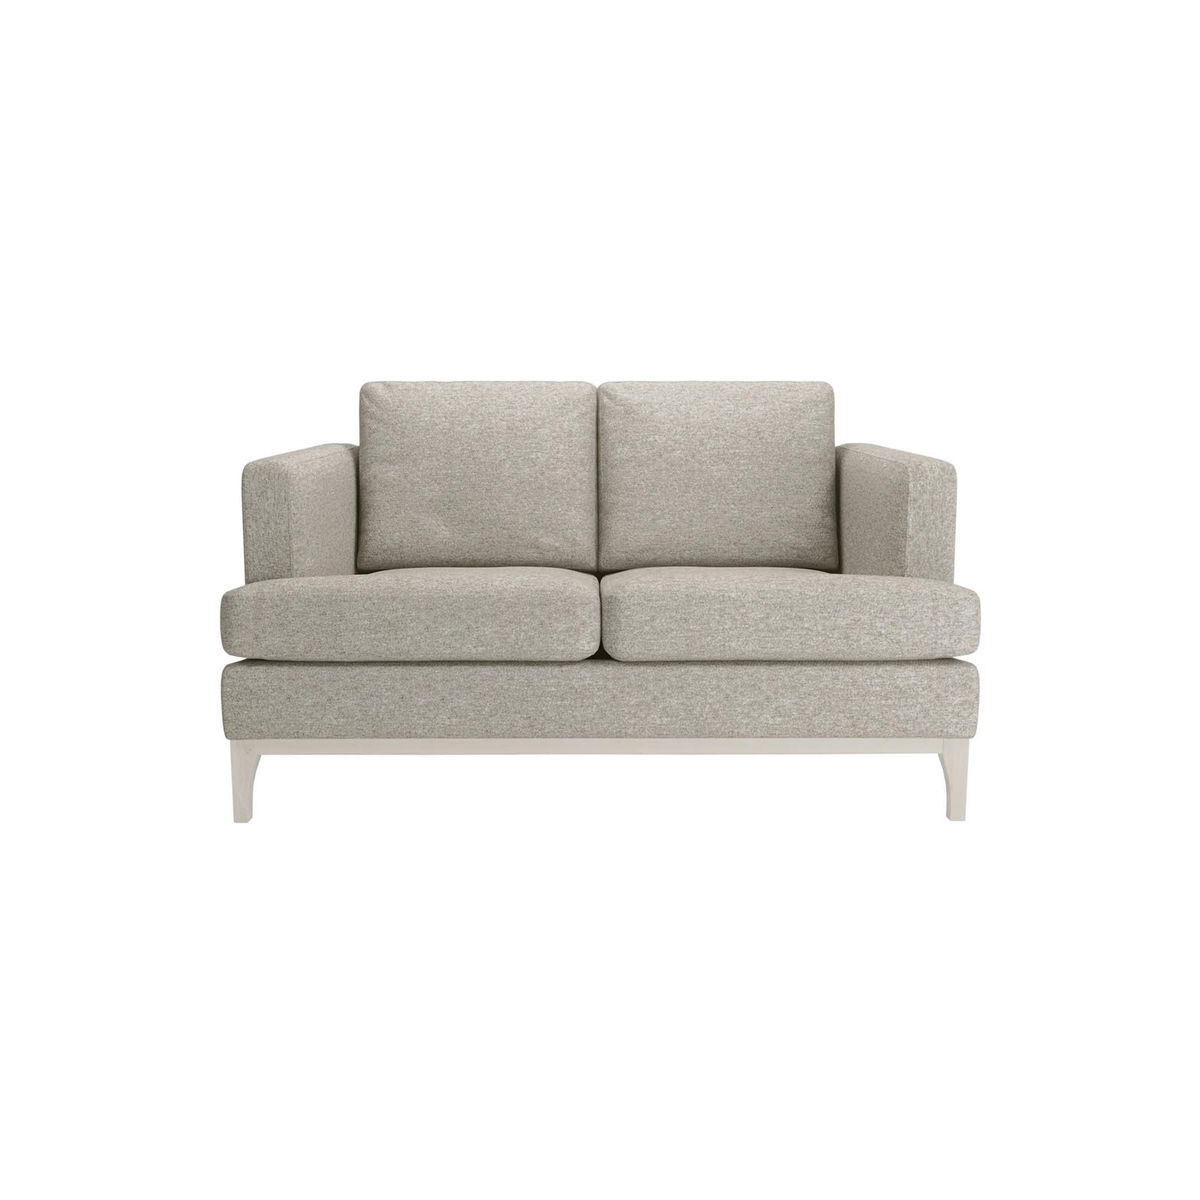 Scarlett 2 Seater Sofa, grey, Leg colour: white - image 1